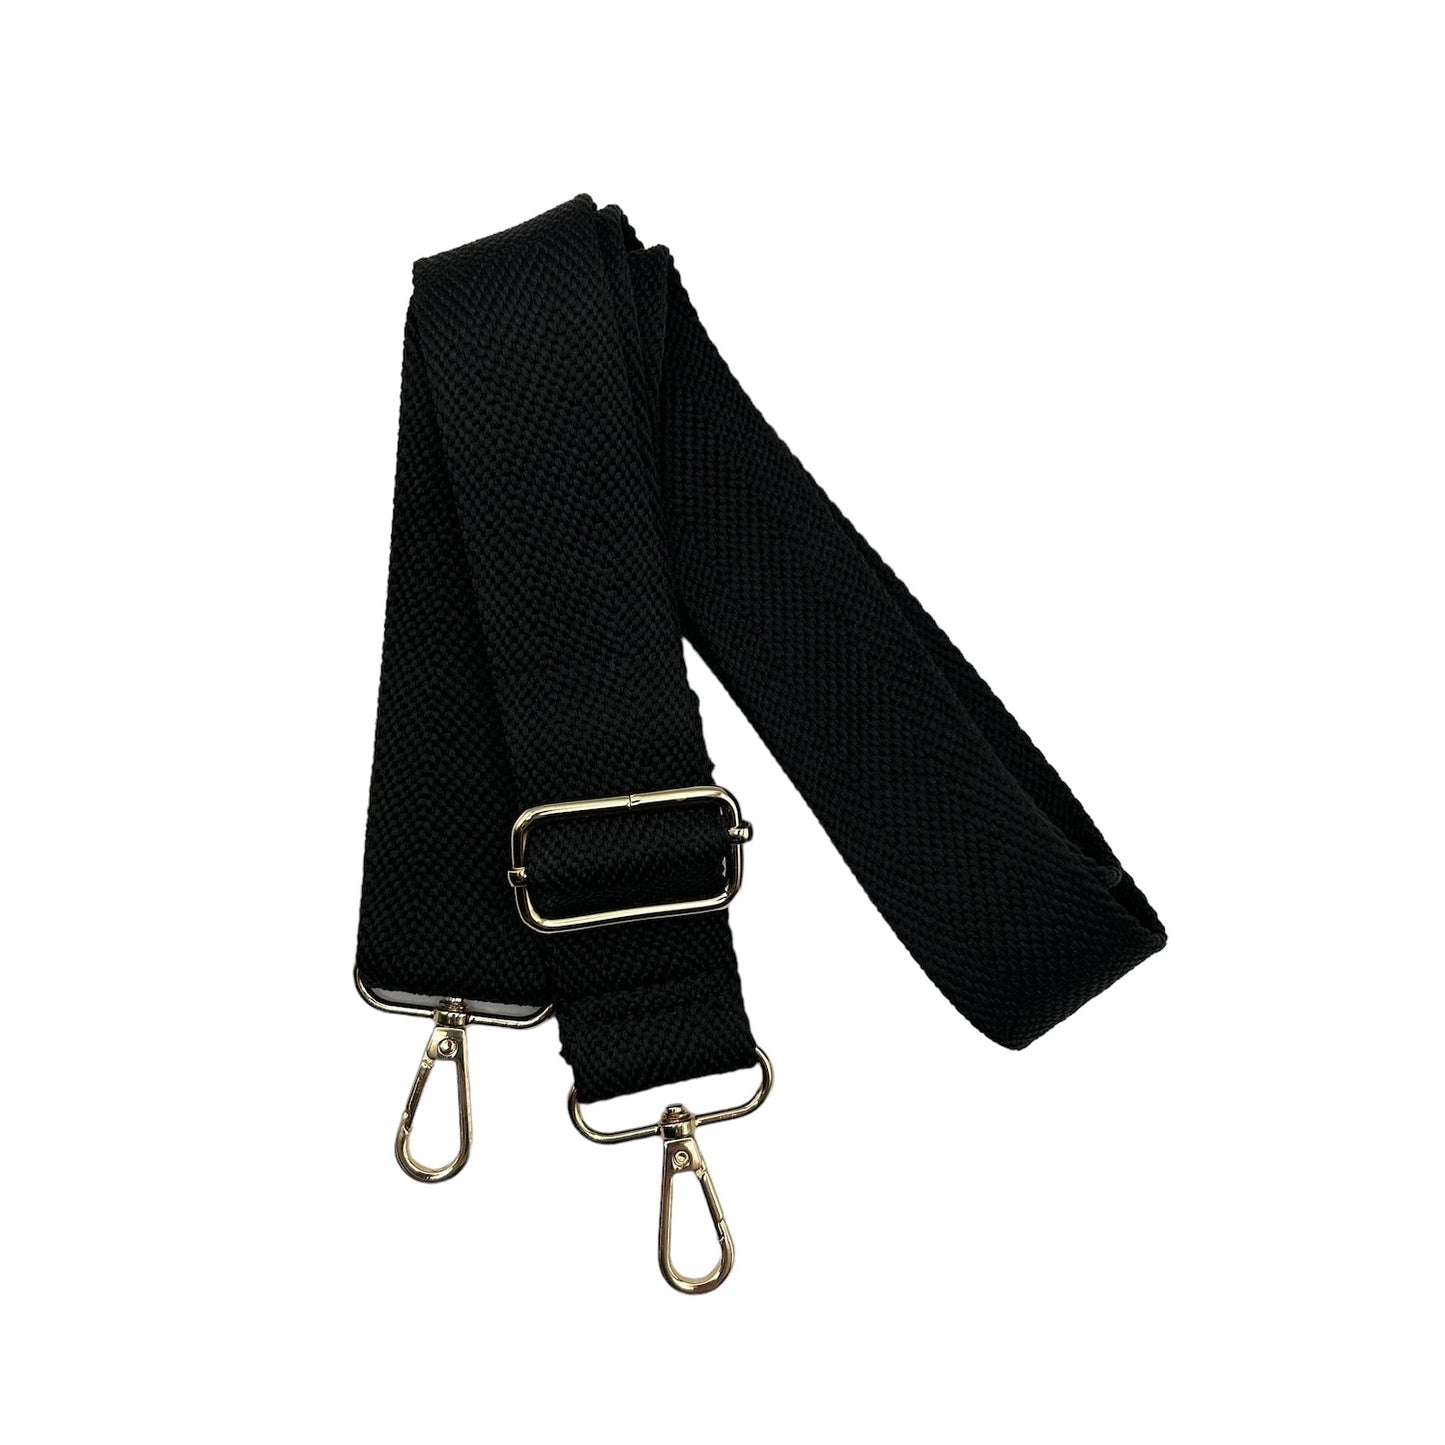 Black webbing strap, recycled nylon